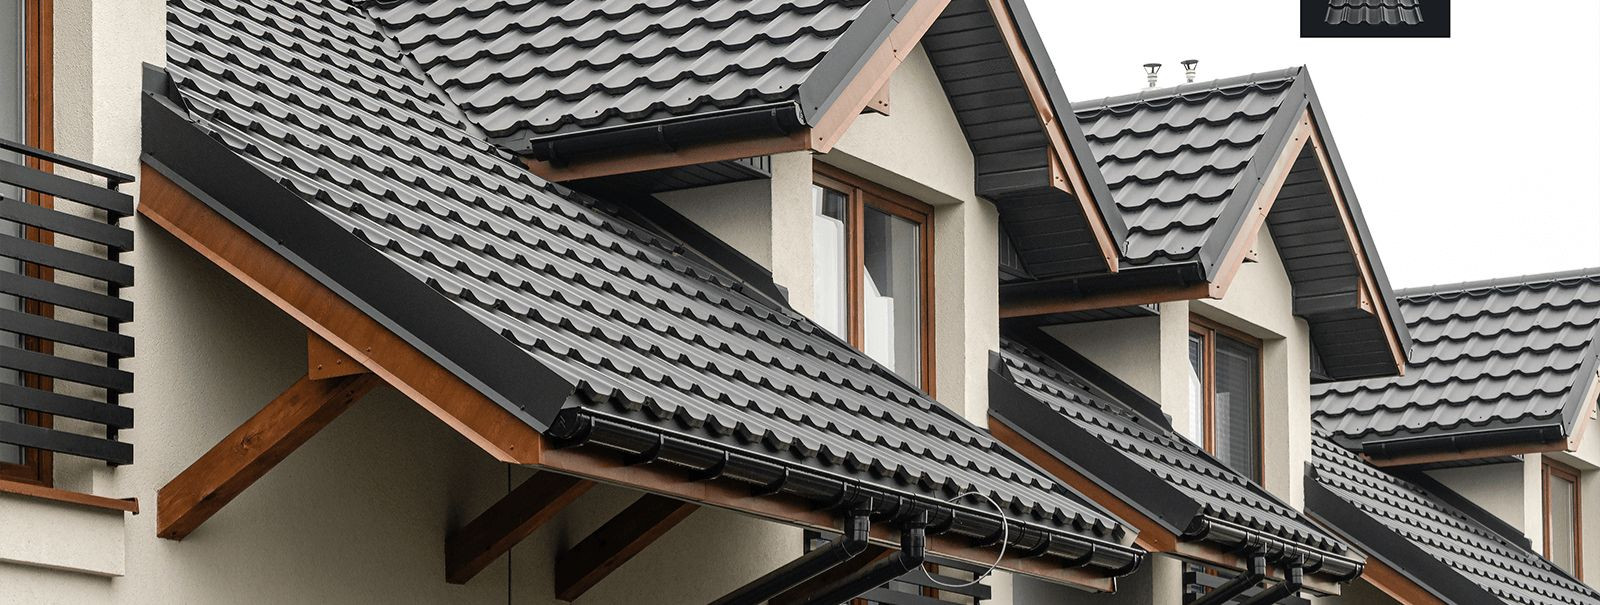 Moodulkatus on kaasaegne katuse lahendus, mis koosneb eelnevalt valmistatud paneelidest või plaatidest, mis on mõeldud lihtsaks ja kiireks paigaldamiseks. See u